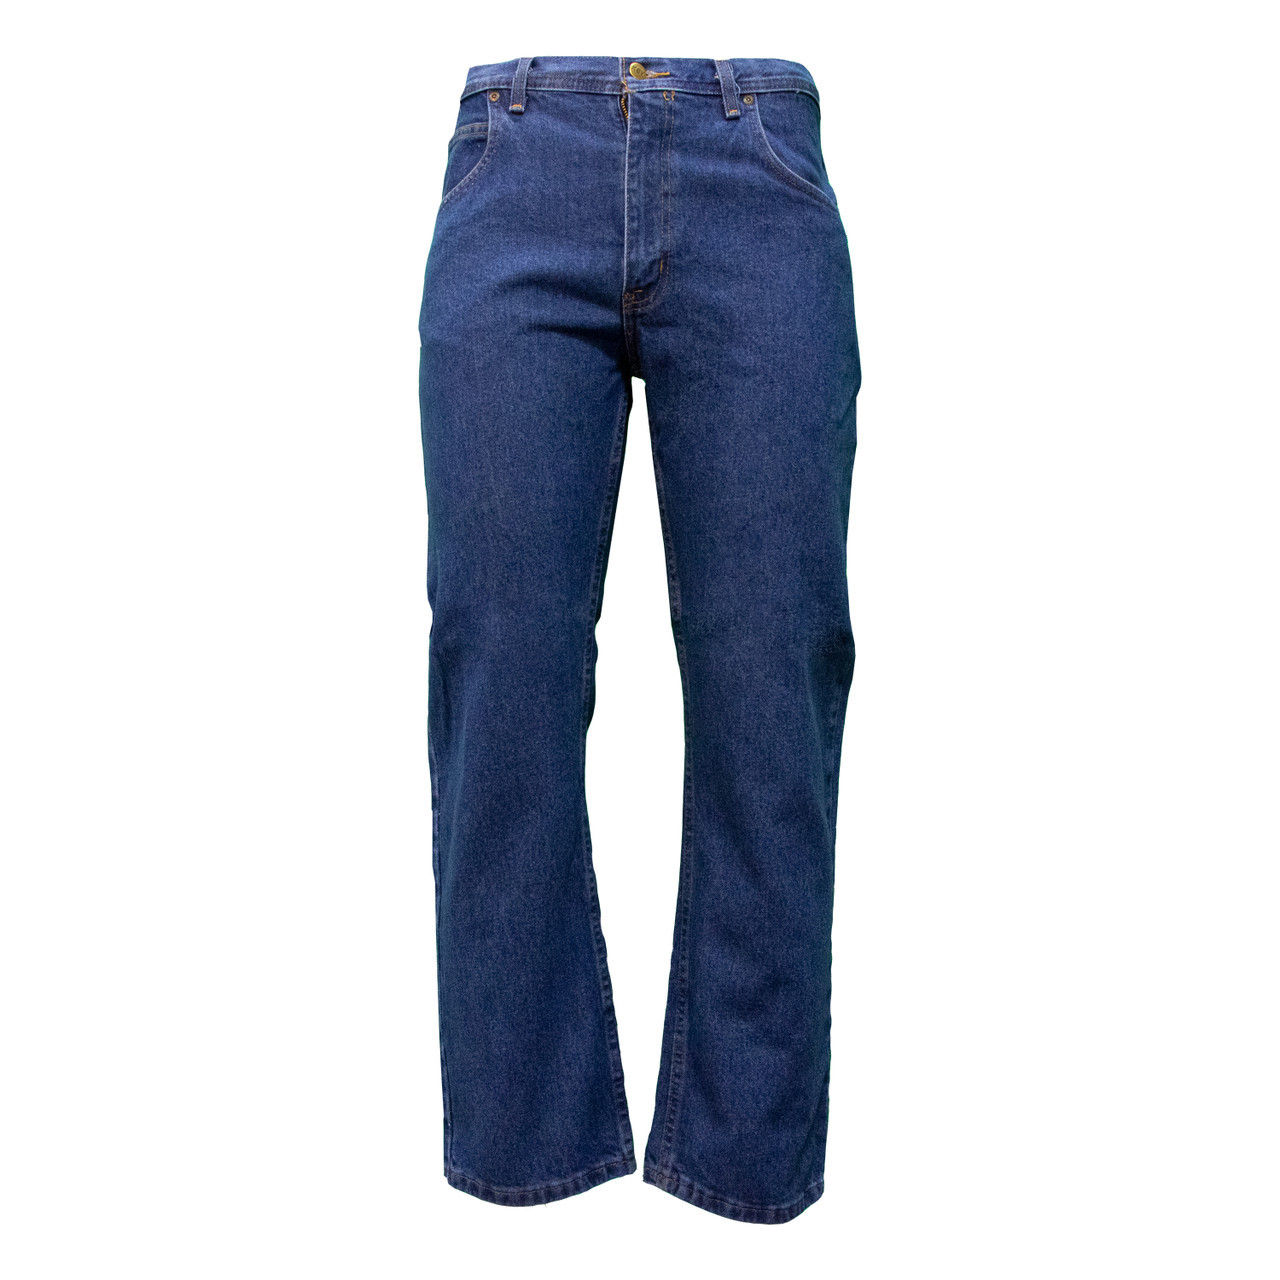 Traditional Denim 5-Pocket Fit KEY | for Men Jeans